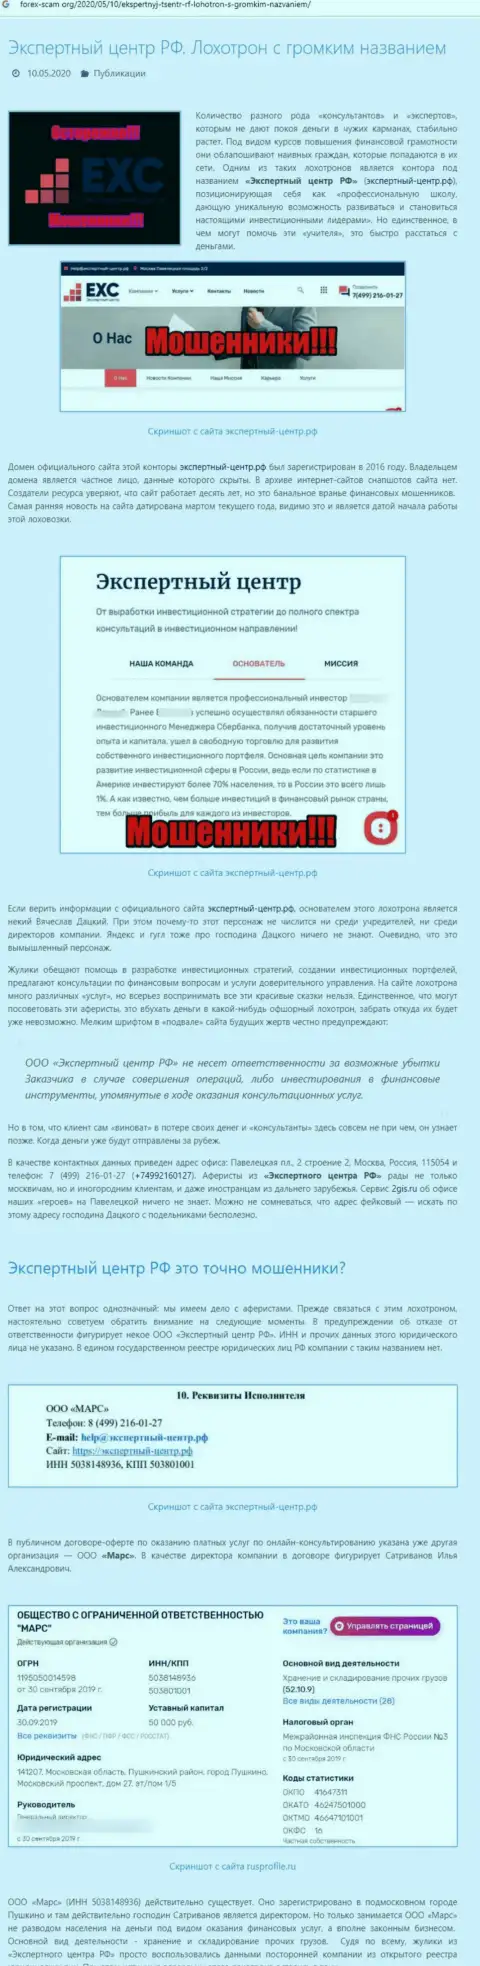 Экспертный Центр России - это МОШЕННИК ! Схемы обмана (обзор мошеннических действий)